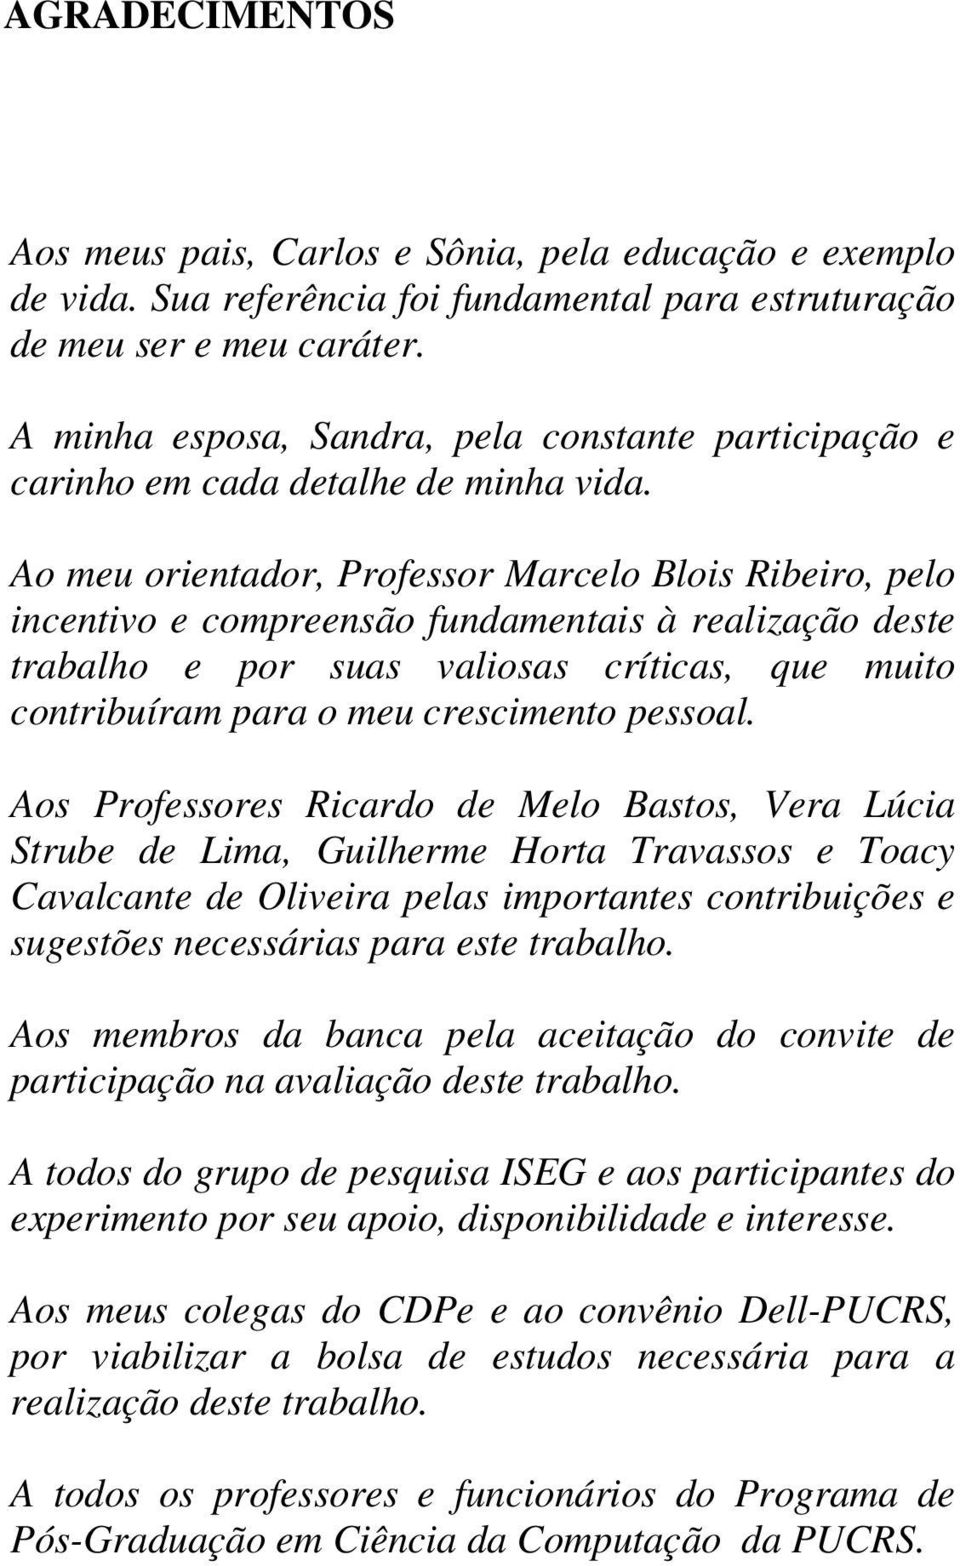 Ao meu orientador, Professor Marcelo Blois Ribeiro, pelo incentivo e compreensão fundamentais à realização deste trabalho e por suas valiosas críticas, que muito contribuíram para o meu crescimento